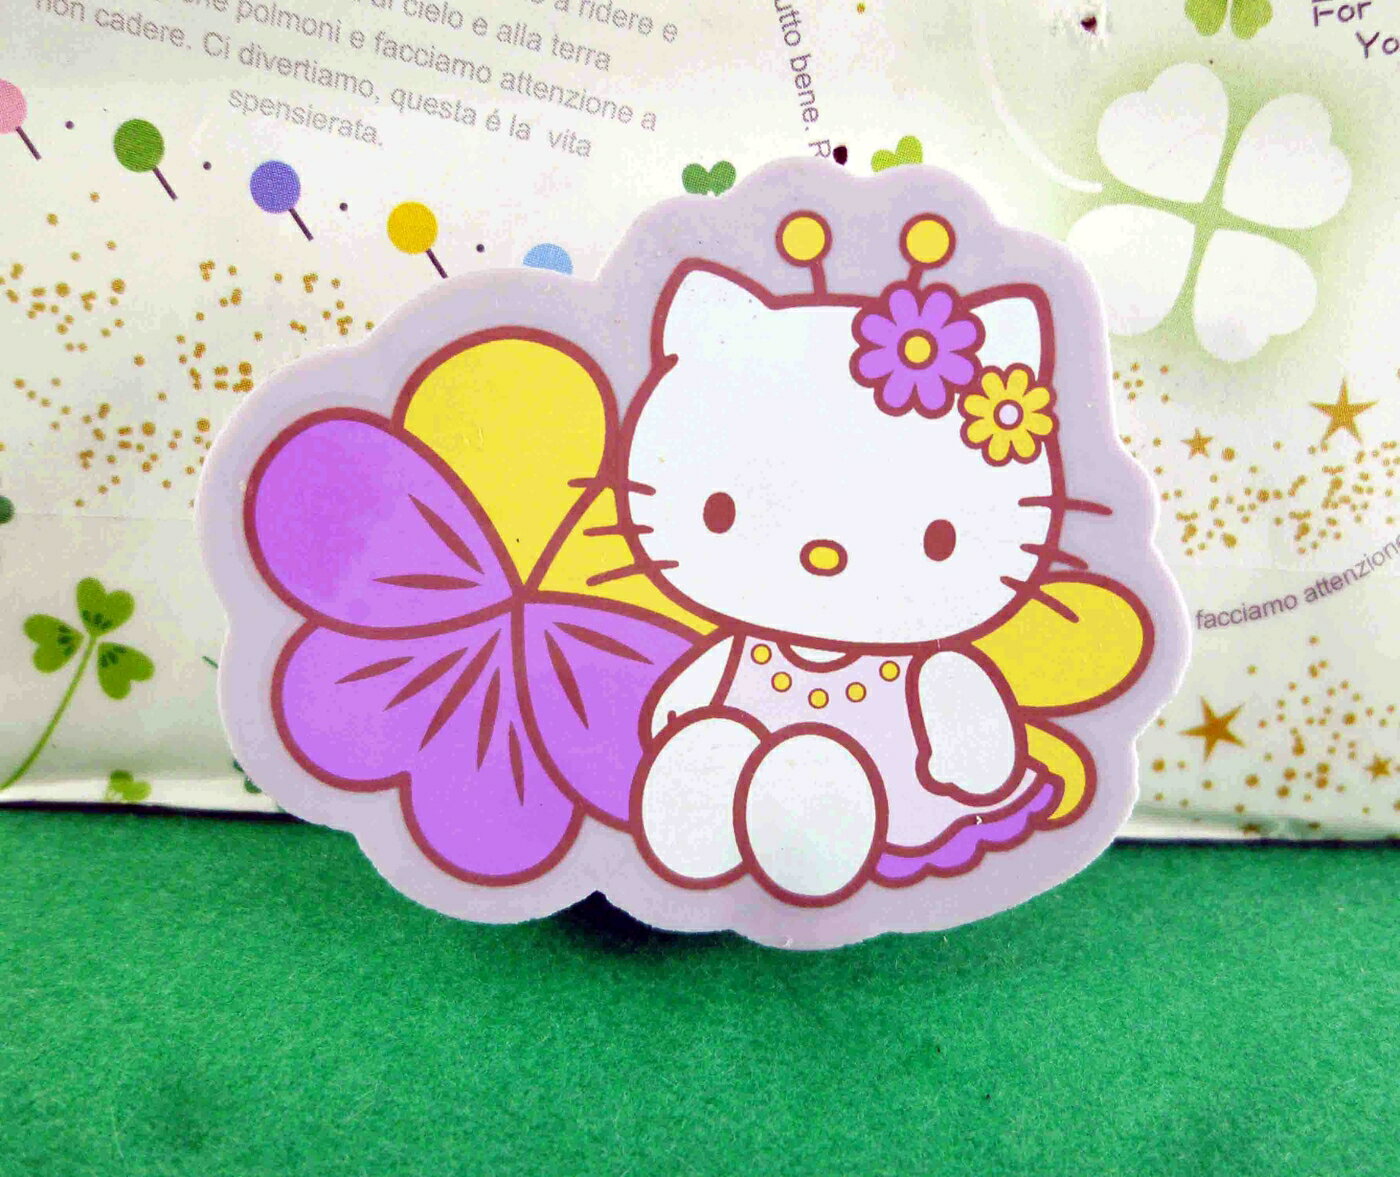 【震撼精品百貨】Hello Kitty 凱蒂貓 造型橡皮擦-紫百合 震撼日式精品百貨